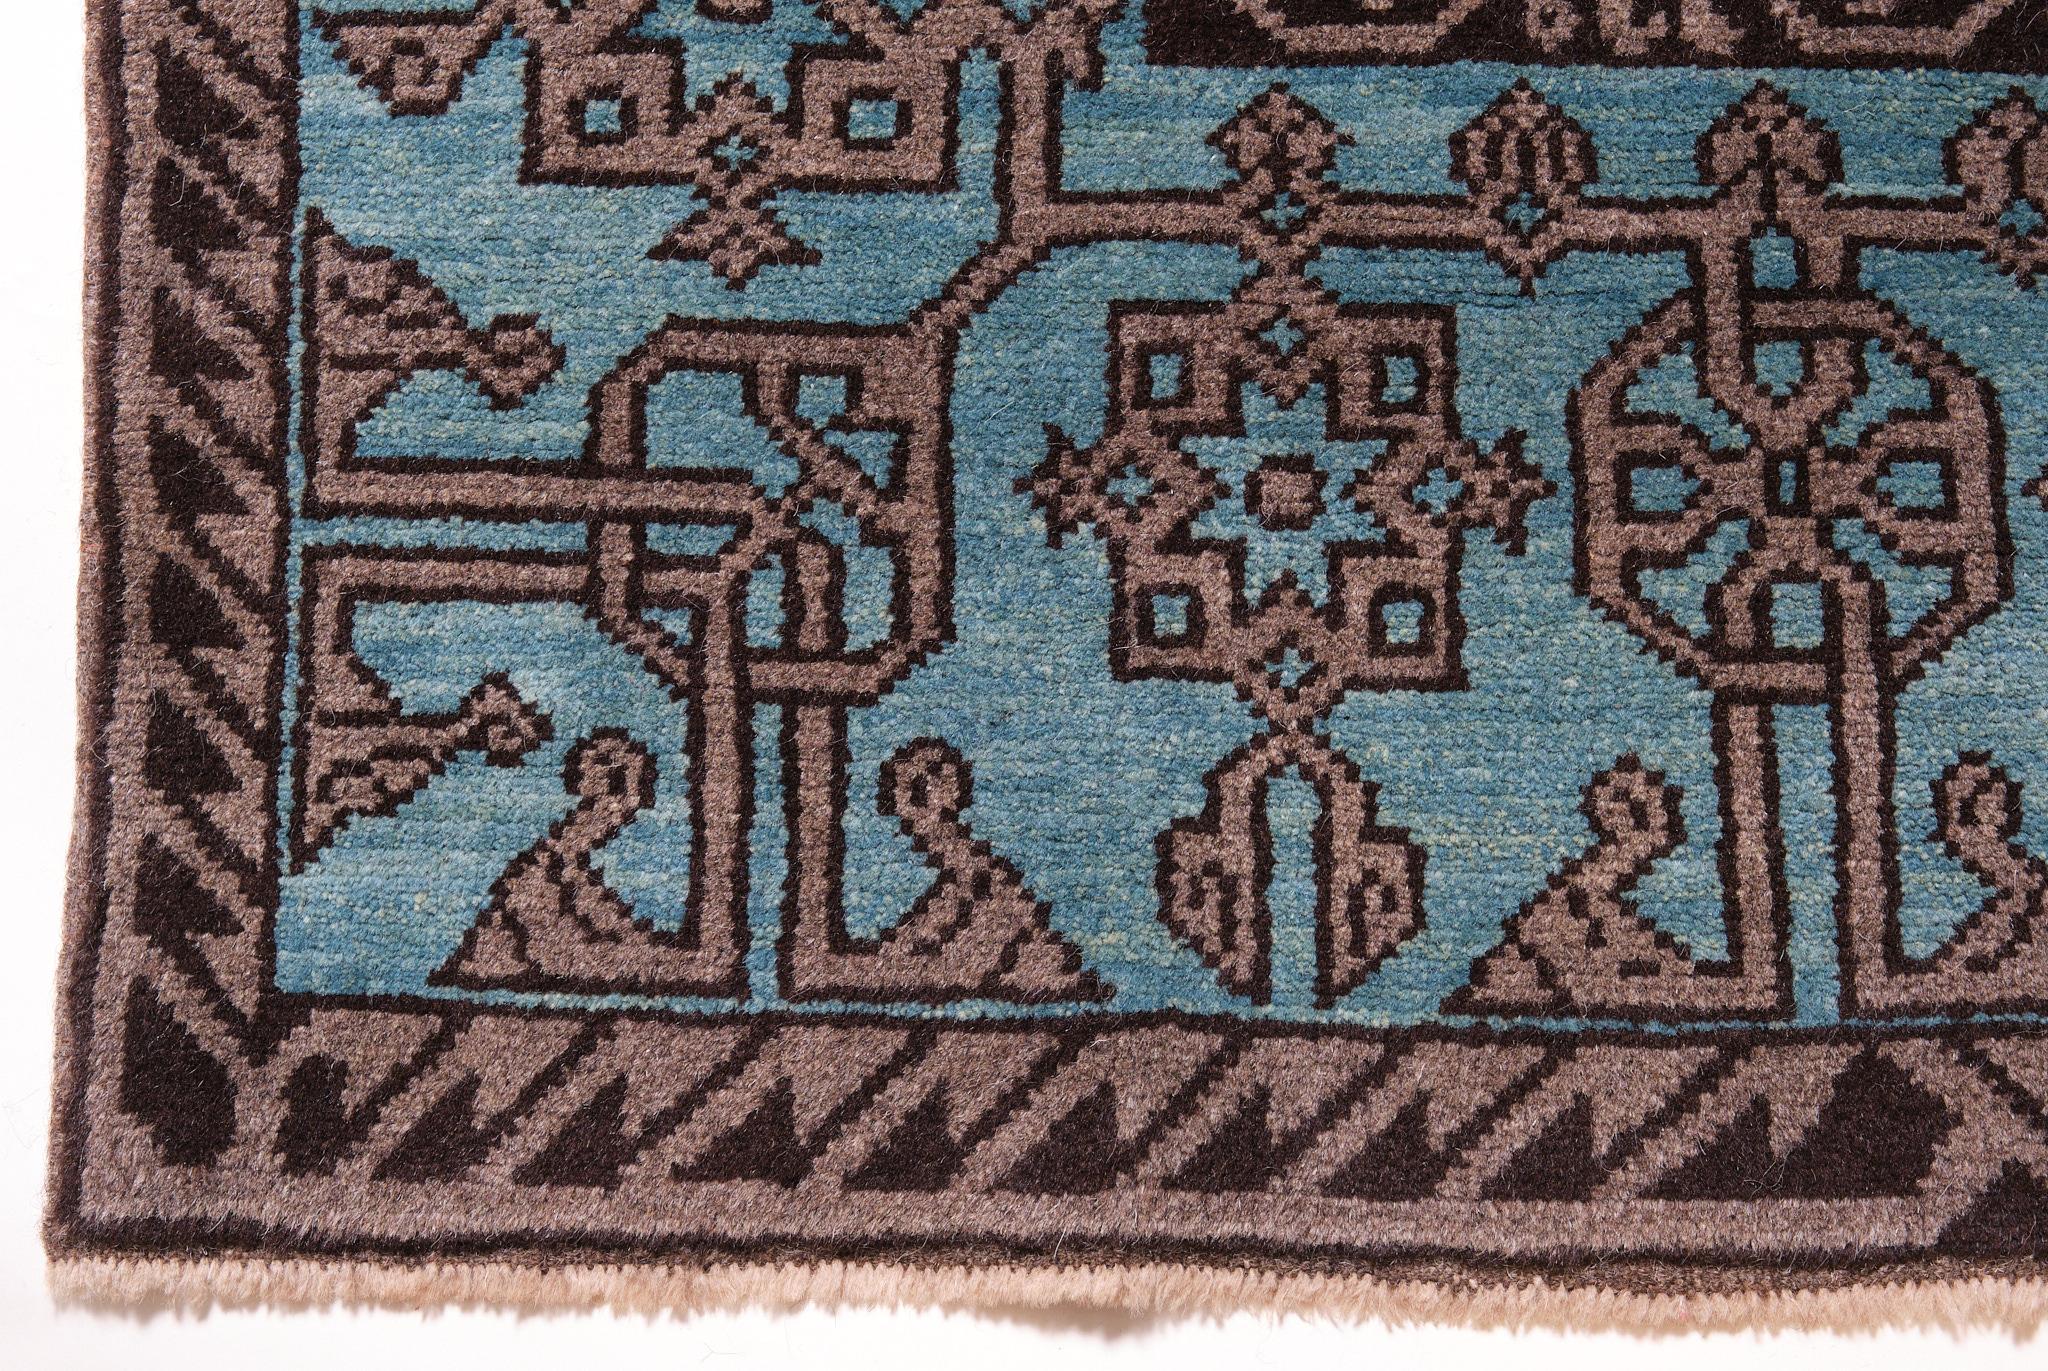 Die Quelle des Teppichs stammt aus dem Buch Turkish Carpets from the 13th - 18th centuries, Ahmet Ertuğ, 1996 pl.9. Dieser Teppich aus dem 13. Jahrhundert stammt aus der Ulu-Moschee, Region Divrigi Sivas, Zentralanatolien. Die Seldschukenzeit